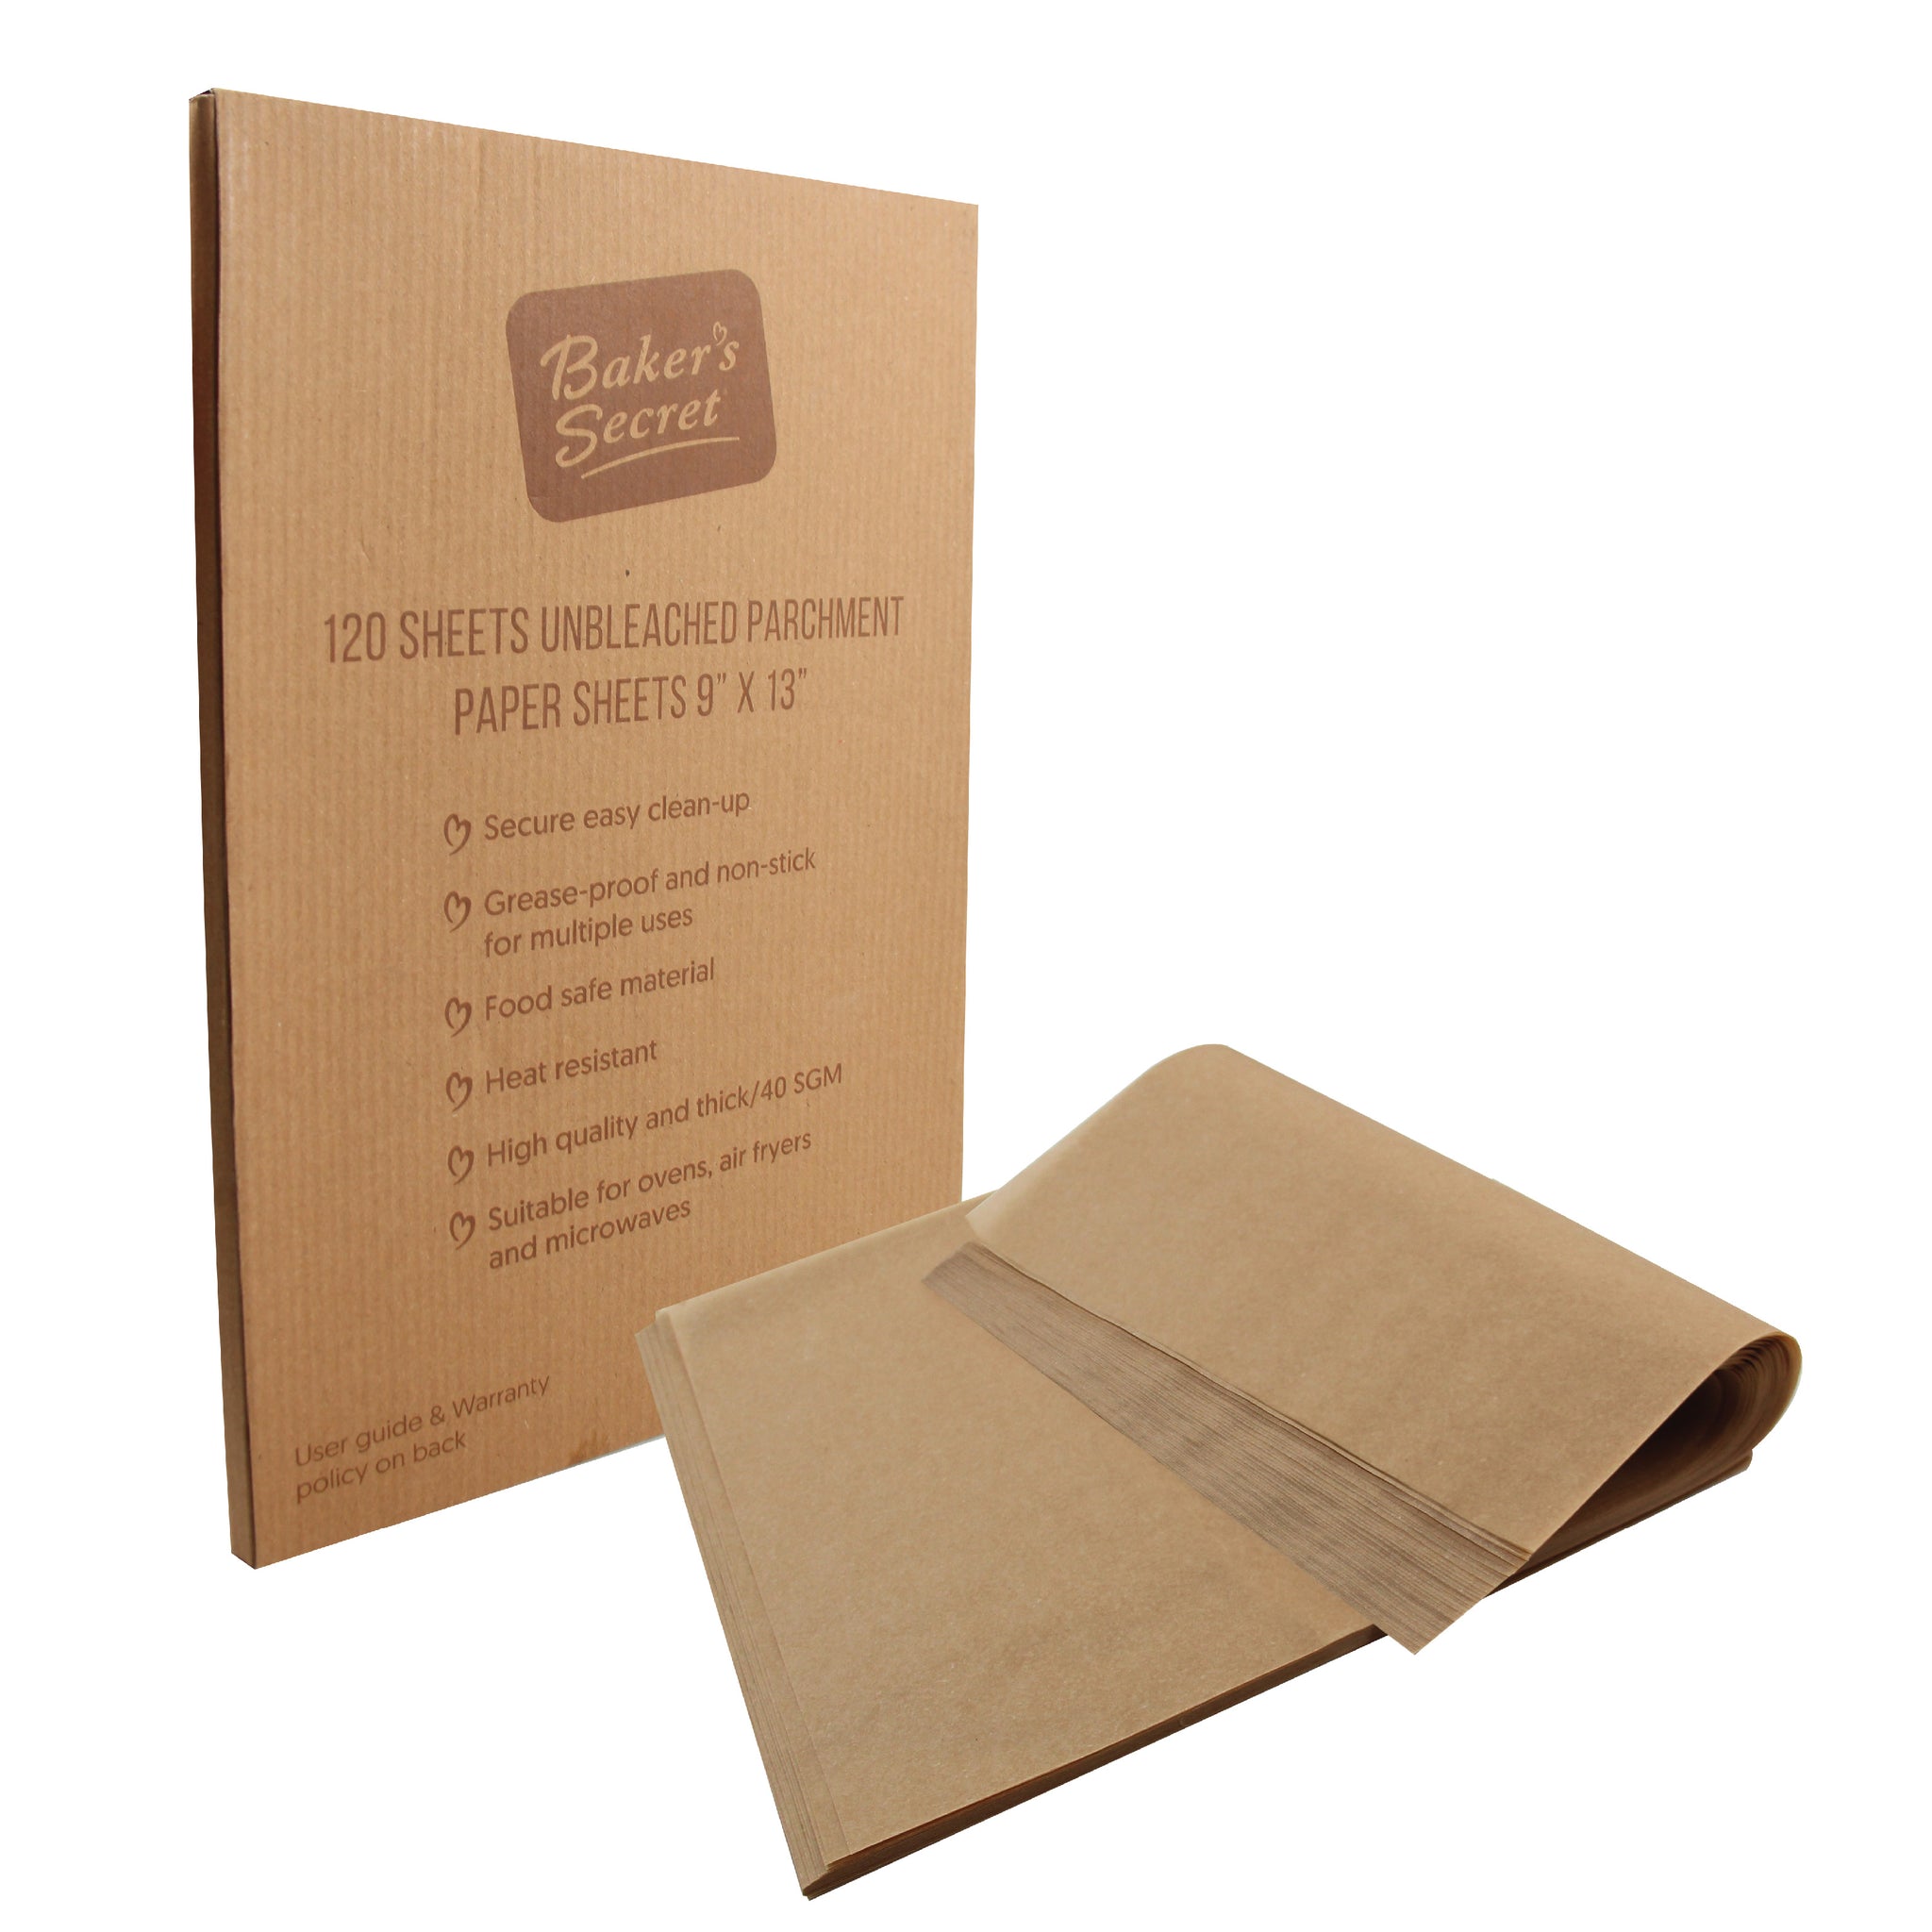 Non-stick Parchment Papers - Unbleached 9"x13" Rectangular Baking Mats & Liners - Baker's Secret